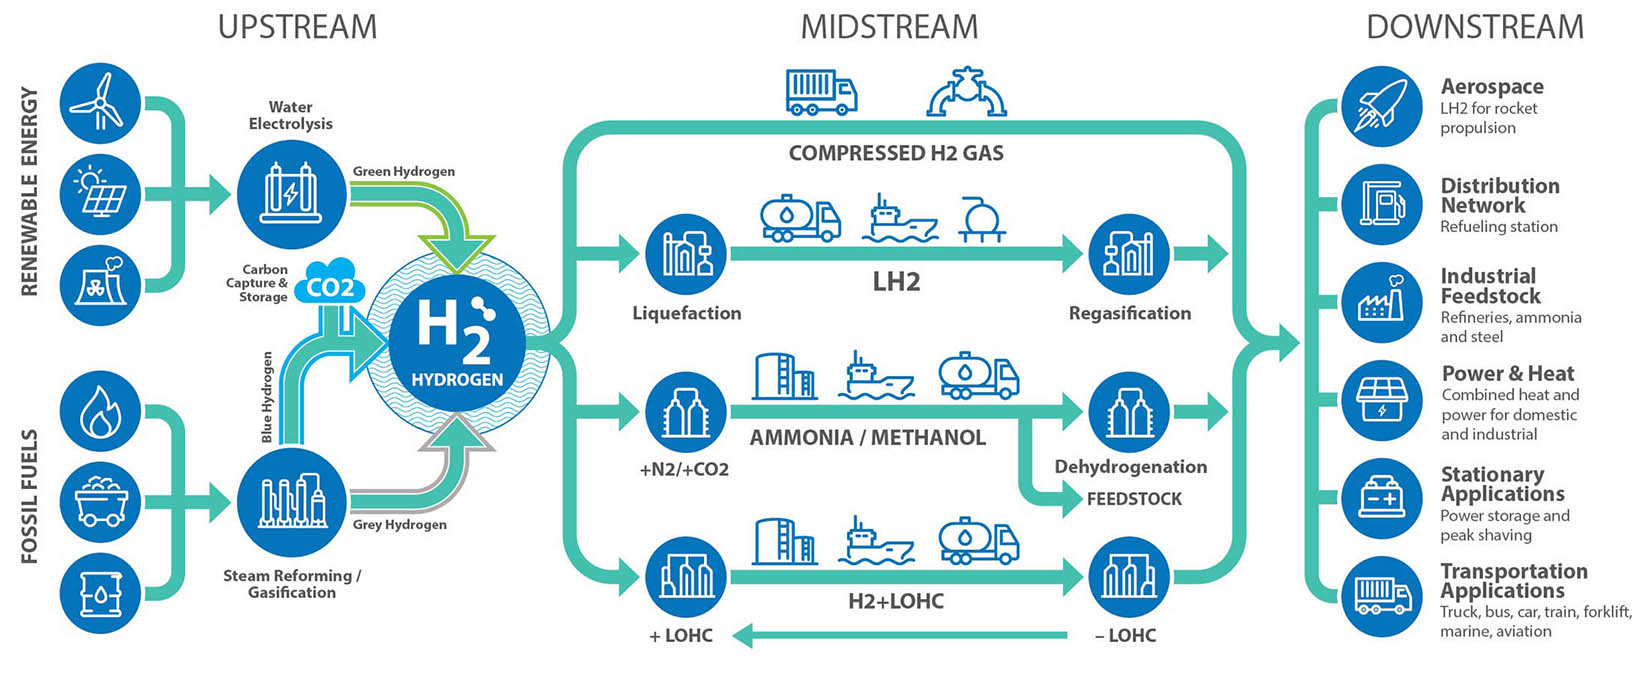 Trimteck Hydrogen Value Chain upstream midstream downstream infographic